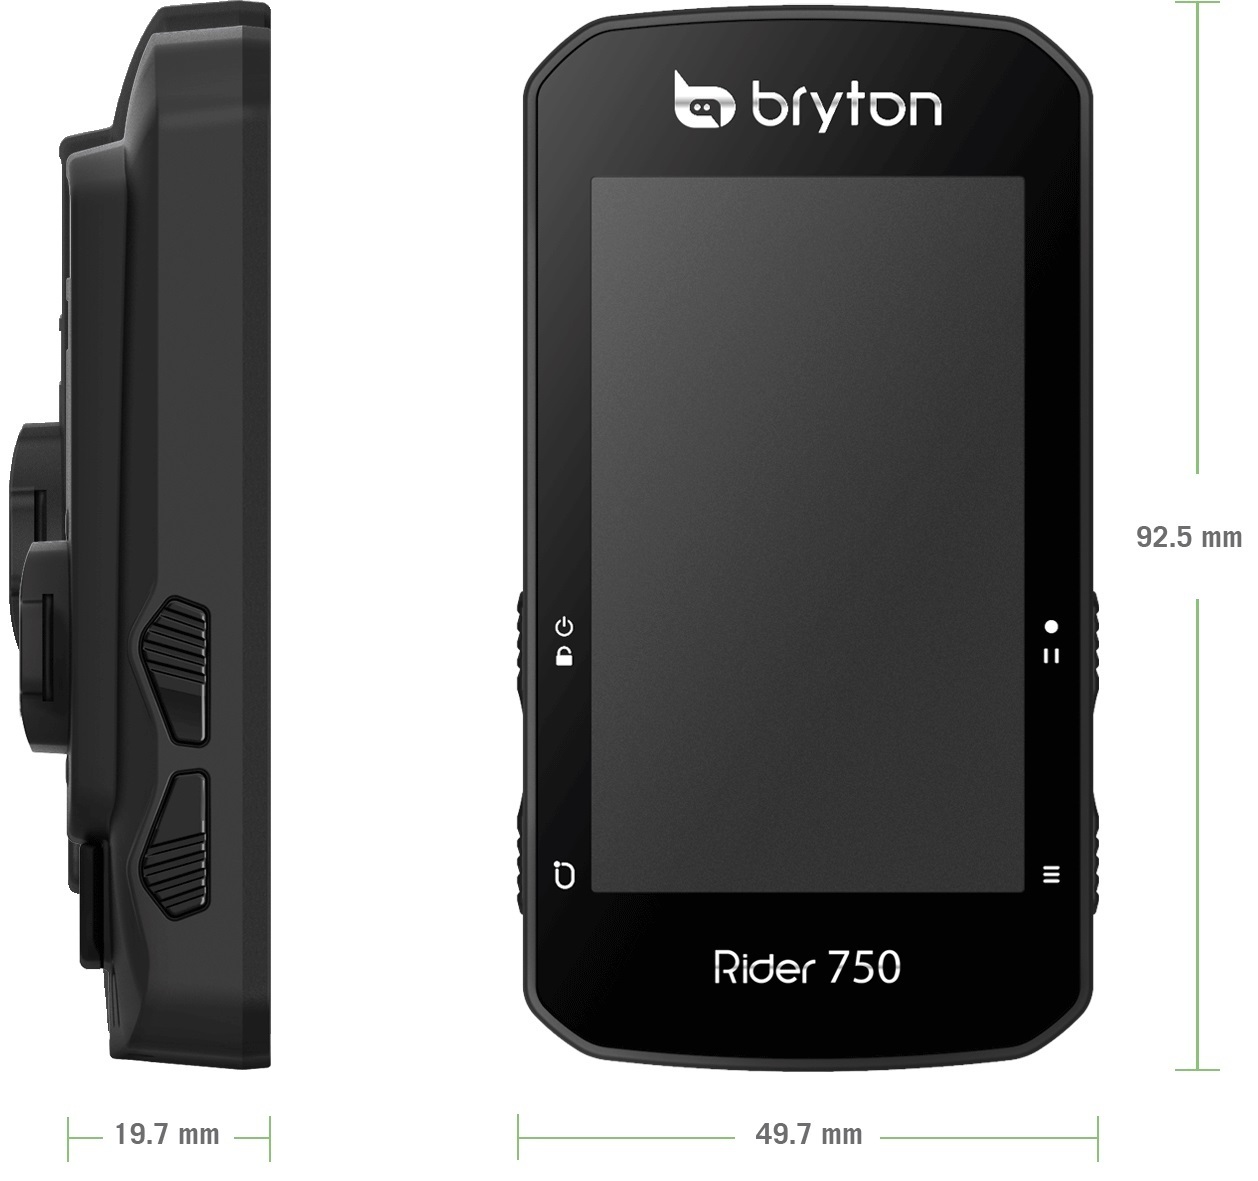 Bryton Rider 750E GPS Fietscomputer